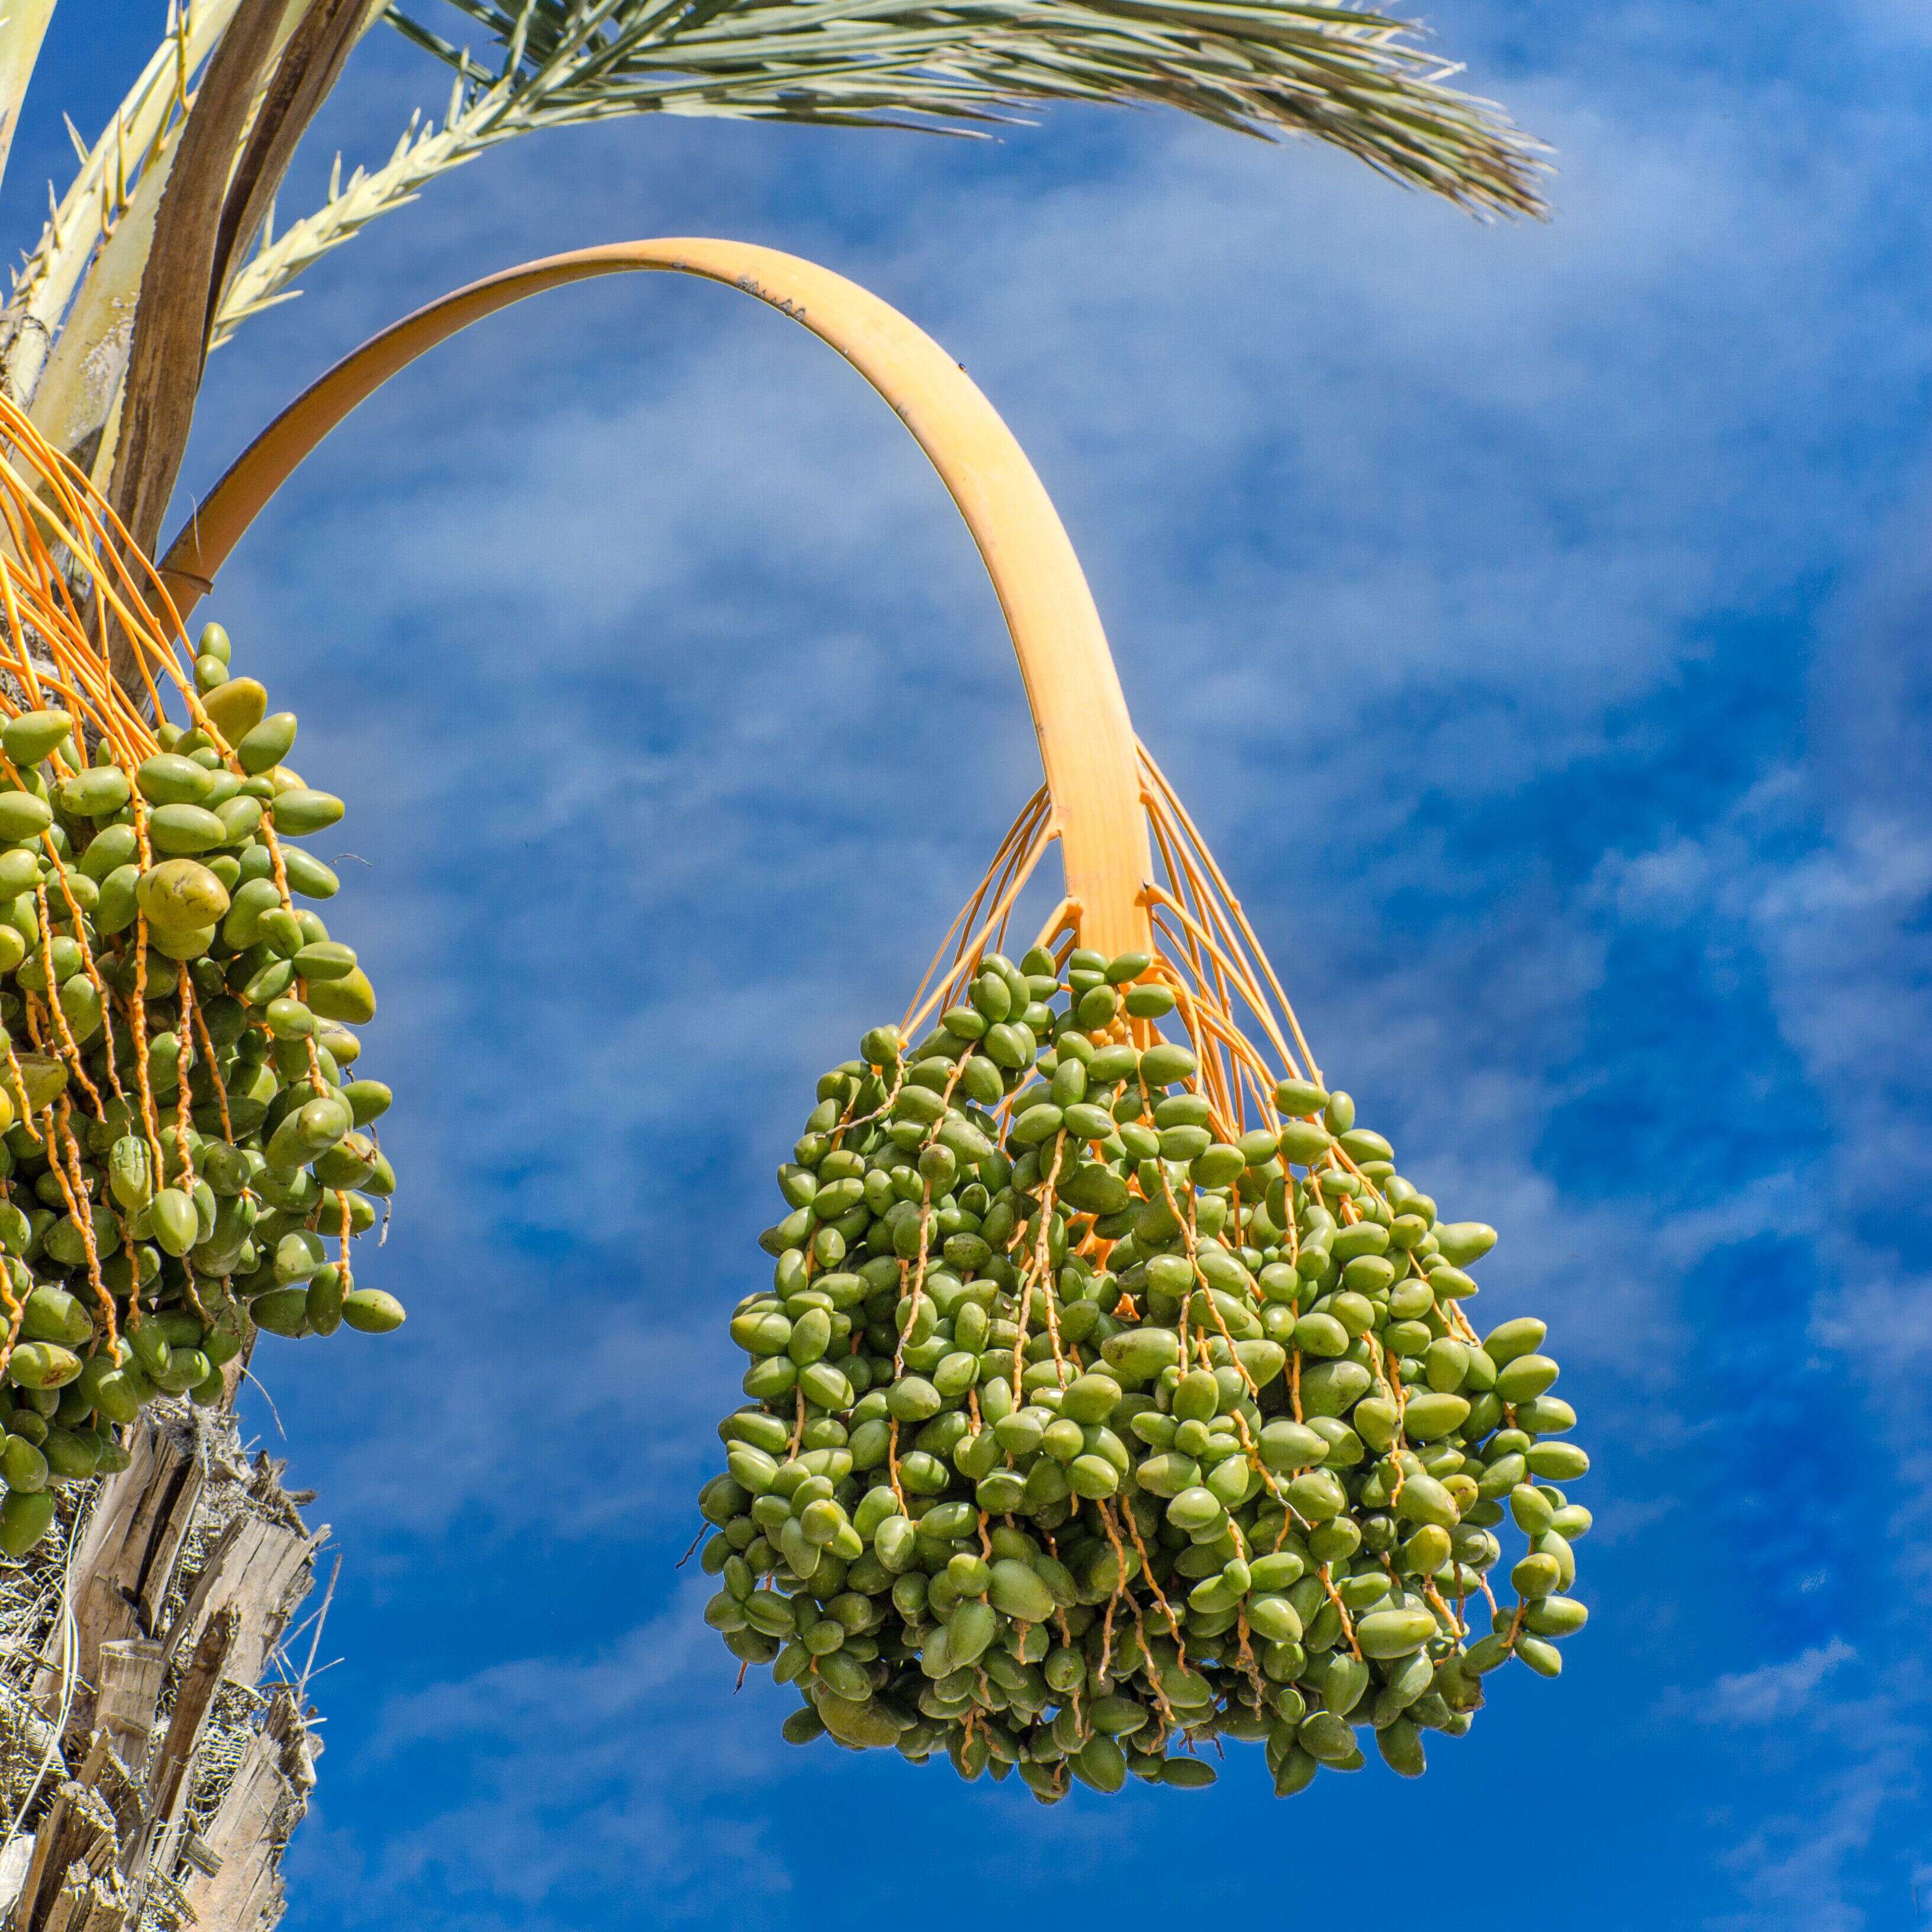 De nos jours, les dattes sont principalement cultivées au Moyen-Orient et au Maghreb.